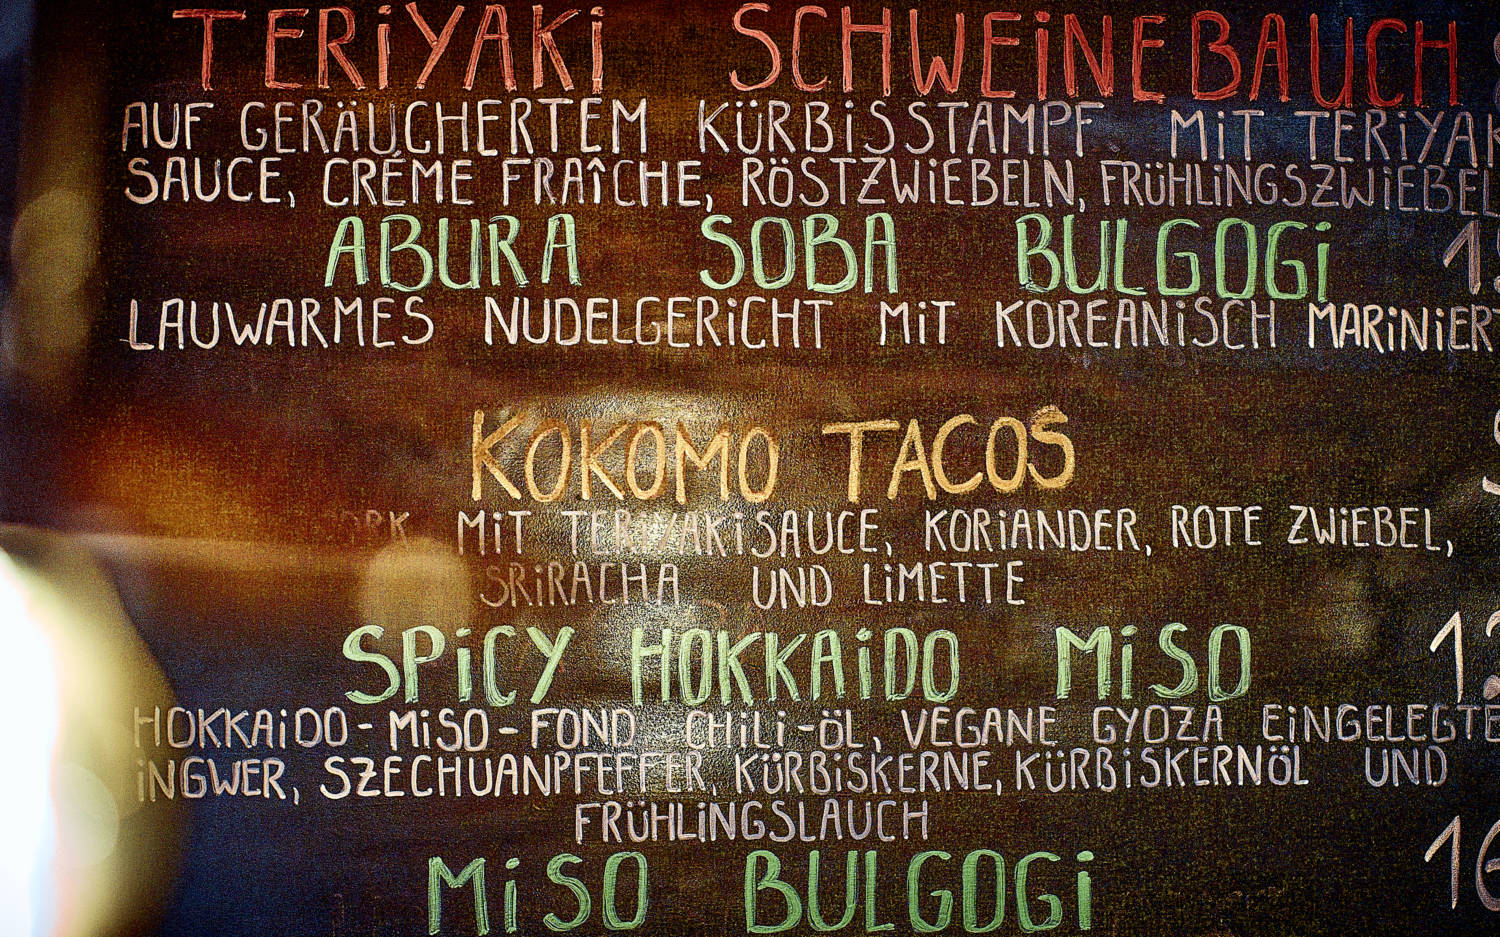 Die ausgefallene Speisekarte des Kokomo Noodle Club in St. Pauli / ©Marc Sill